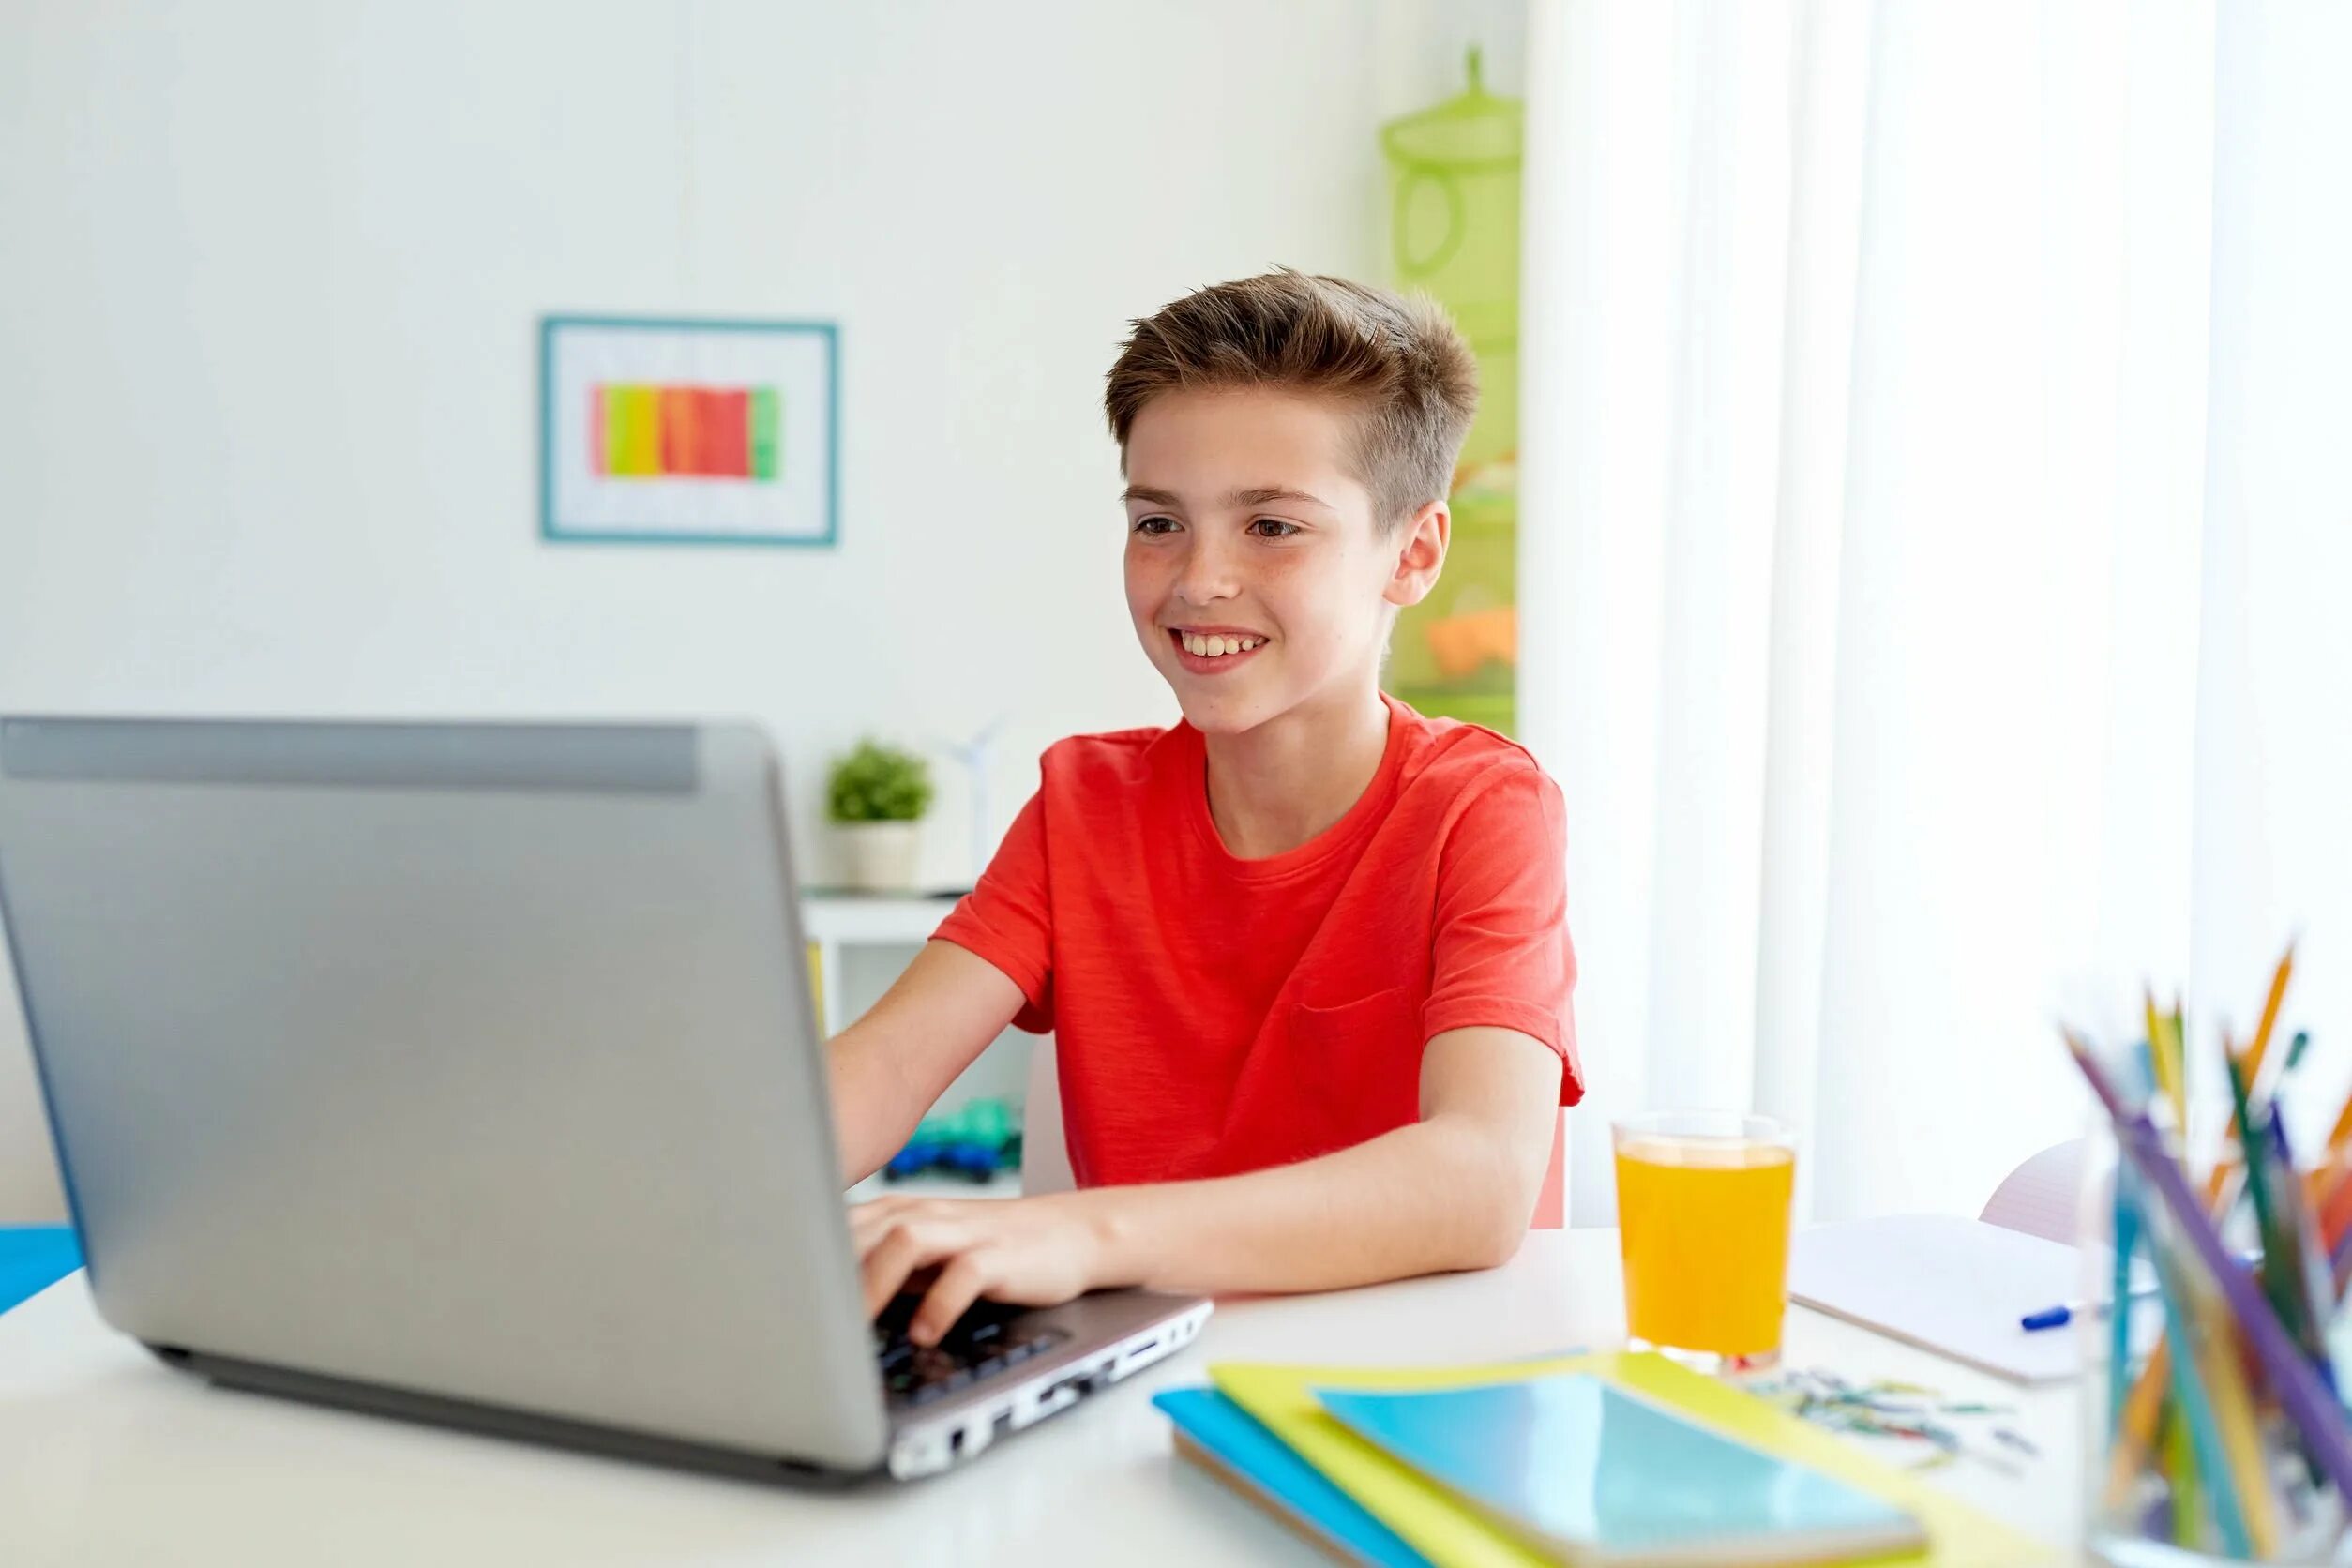 Работа с 14 лет с учебой. Ребенок за компьютером. Компьютер для детей. Подросток и компьютер. Подросток с ноутбуком.